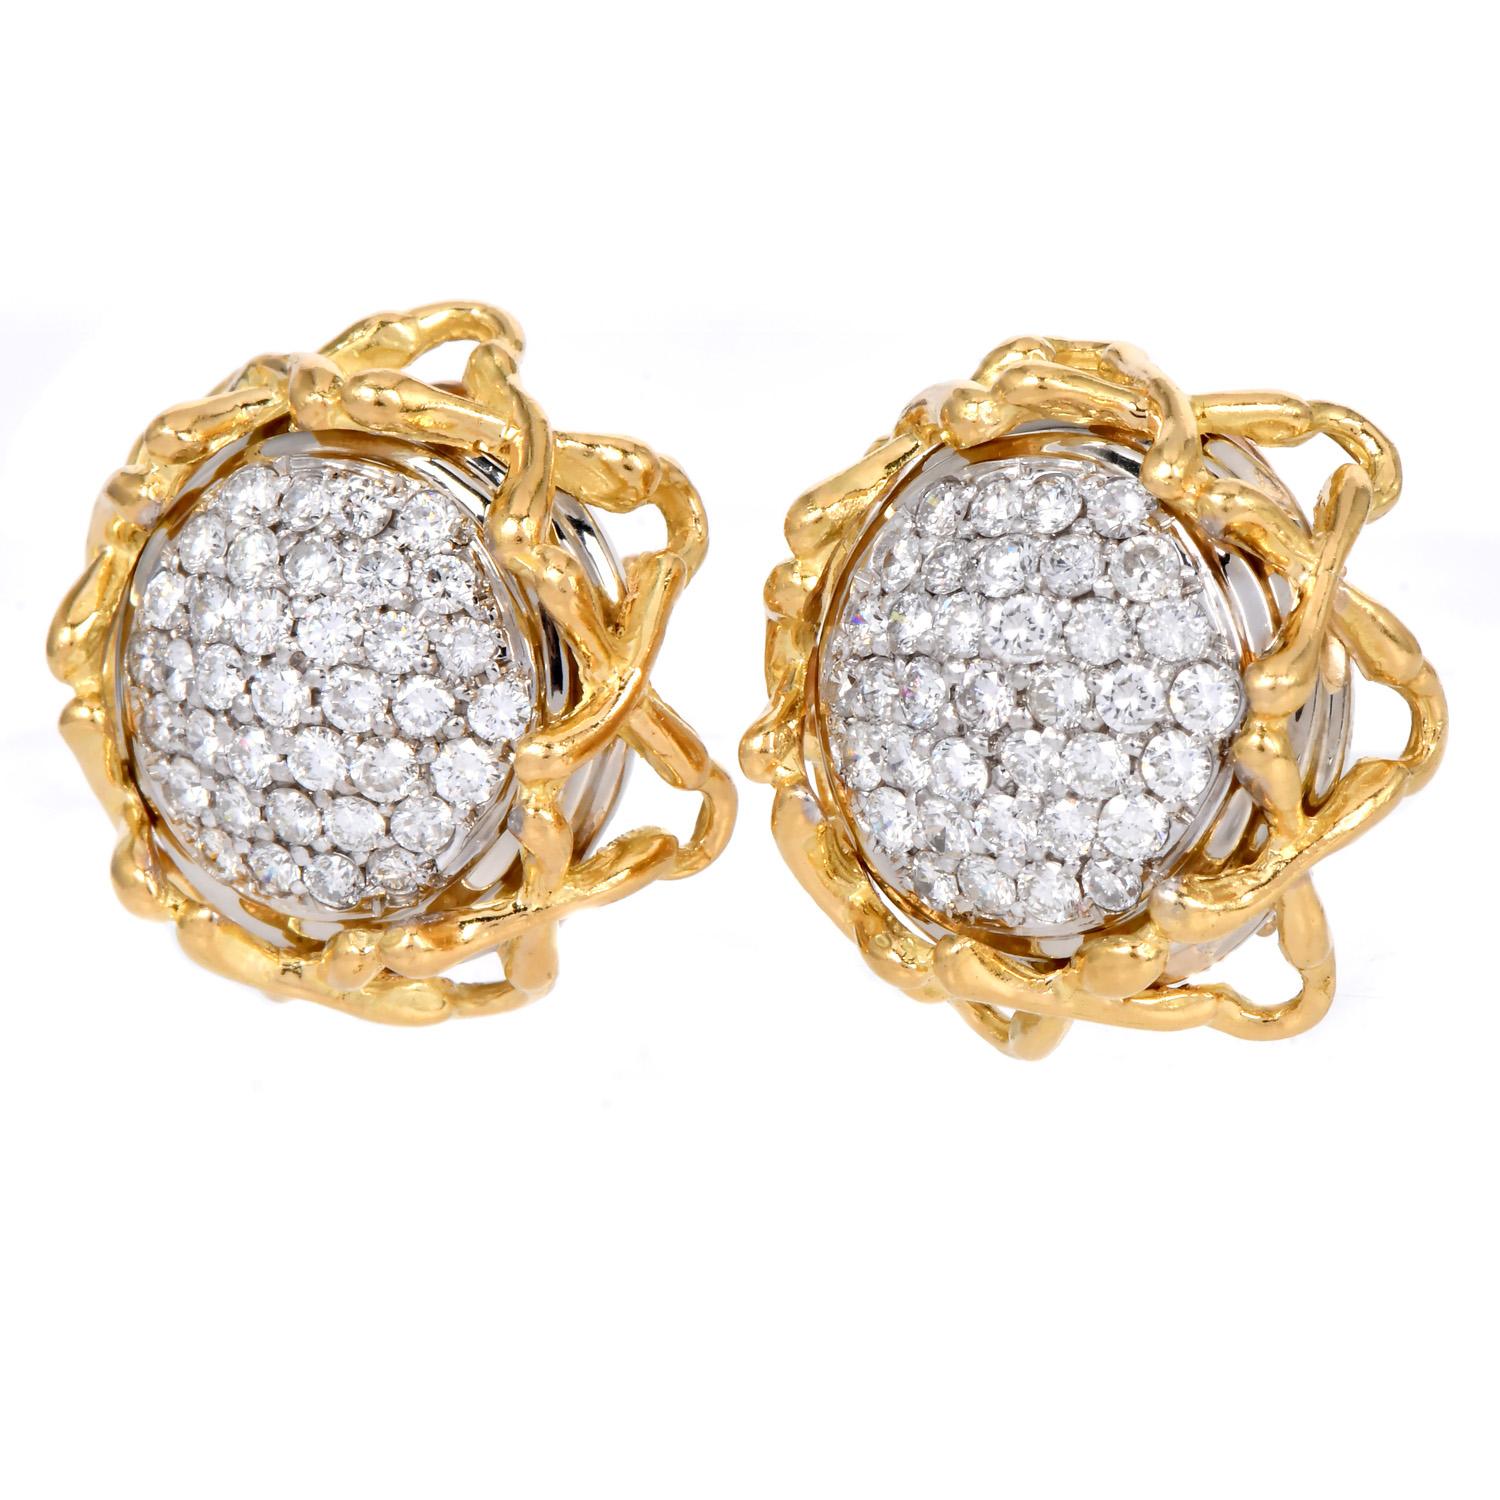 Exquisite Vintage-Ohrringe aus den 1970er Jahren mit natürlichen runden Diamanten in einer luxuriösen Kombination aus 18 Karat Gelb- und Weißgold.

Diese Ohrringe sind in meisterhafter Handarbeit in Form von Sonnenblumen gefertigt, die von einem